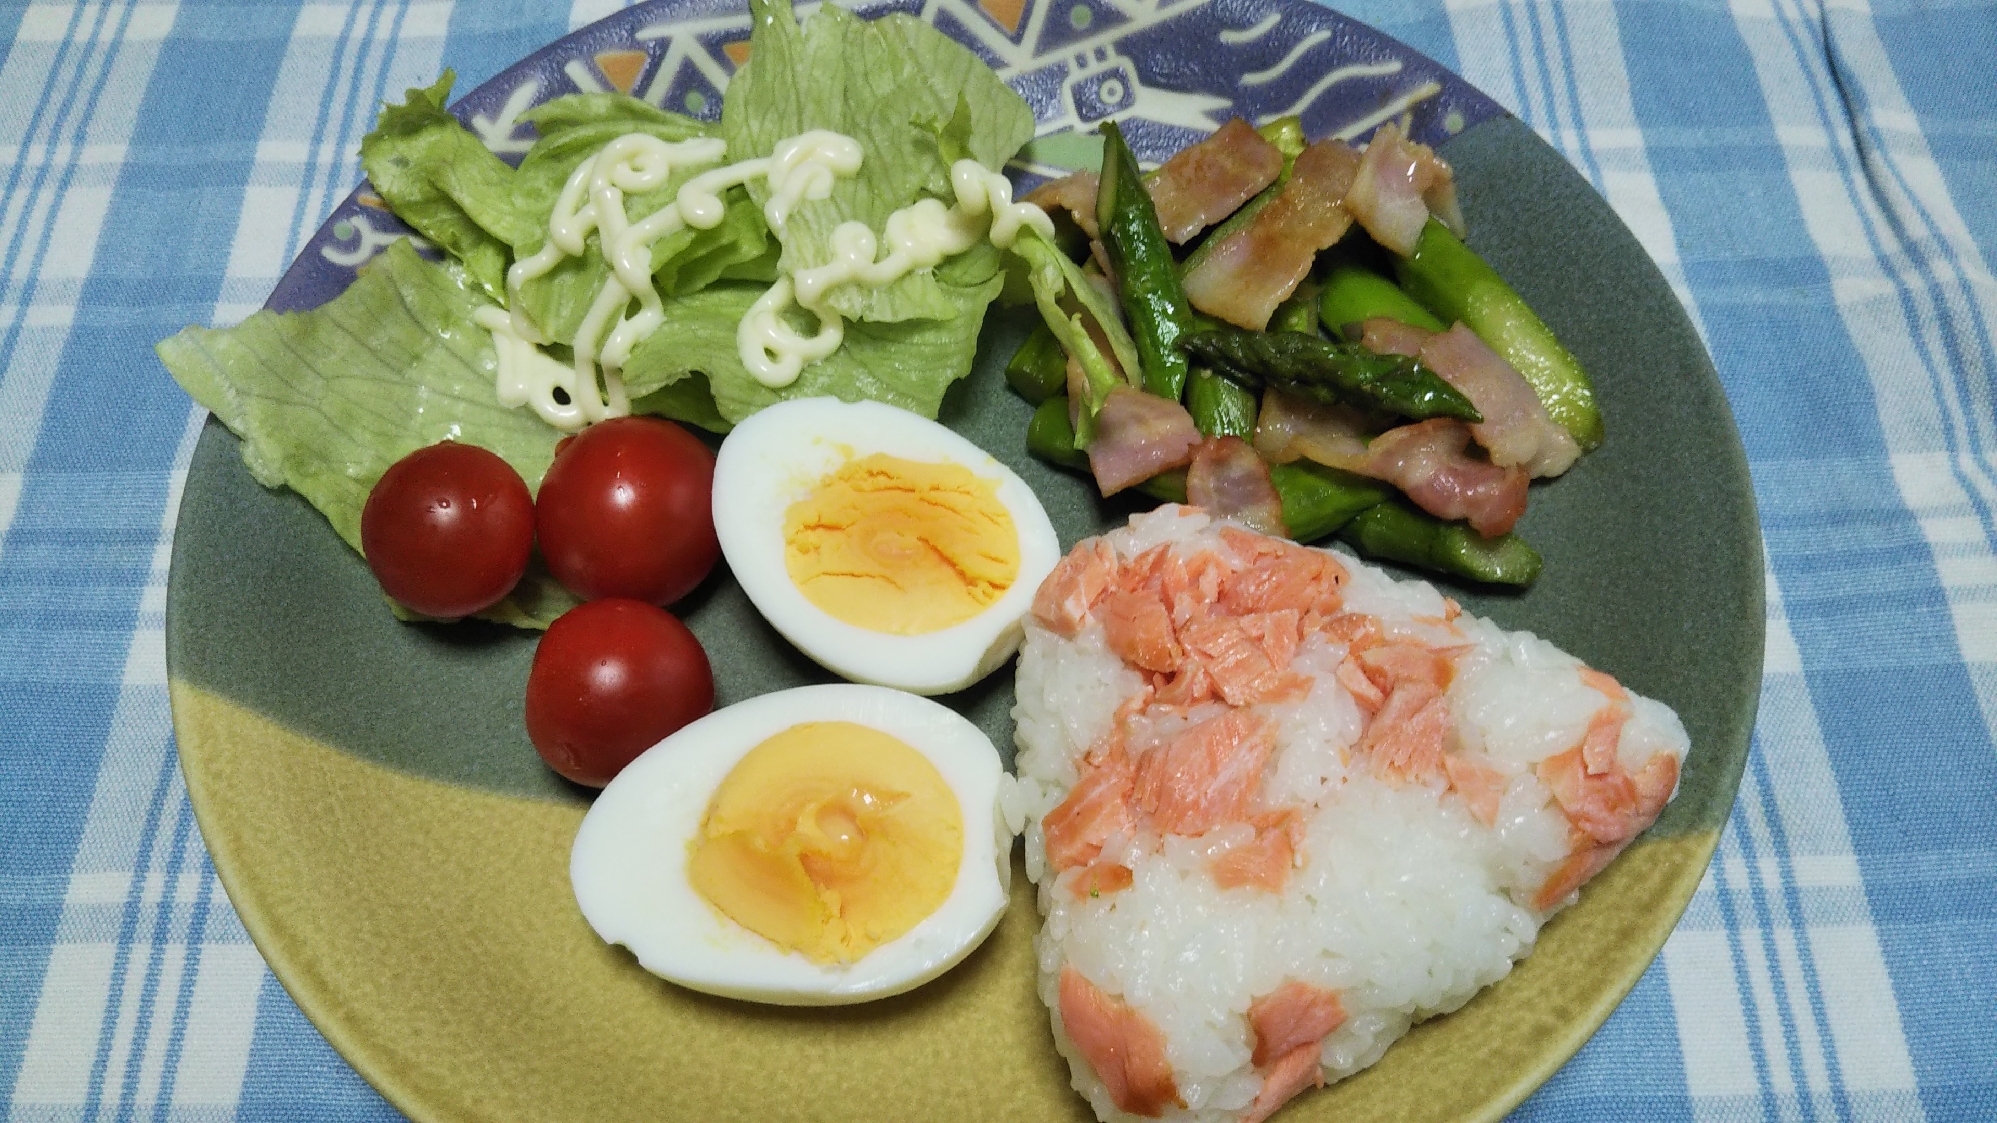 アスパラベーコン炒めと鮭おにぎりの朝食☆